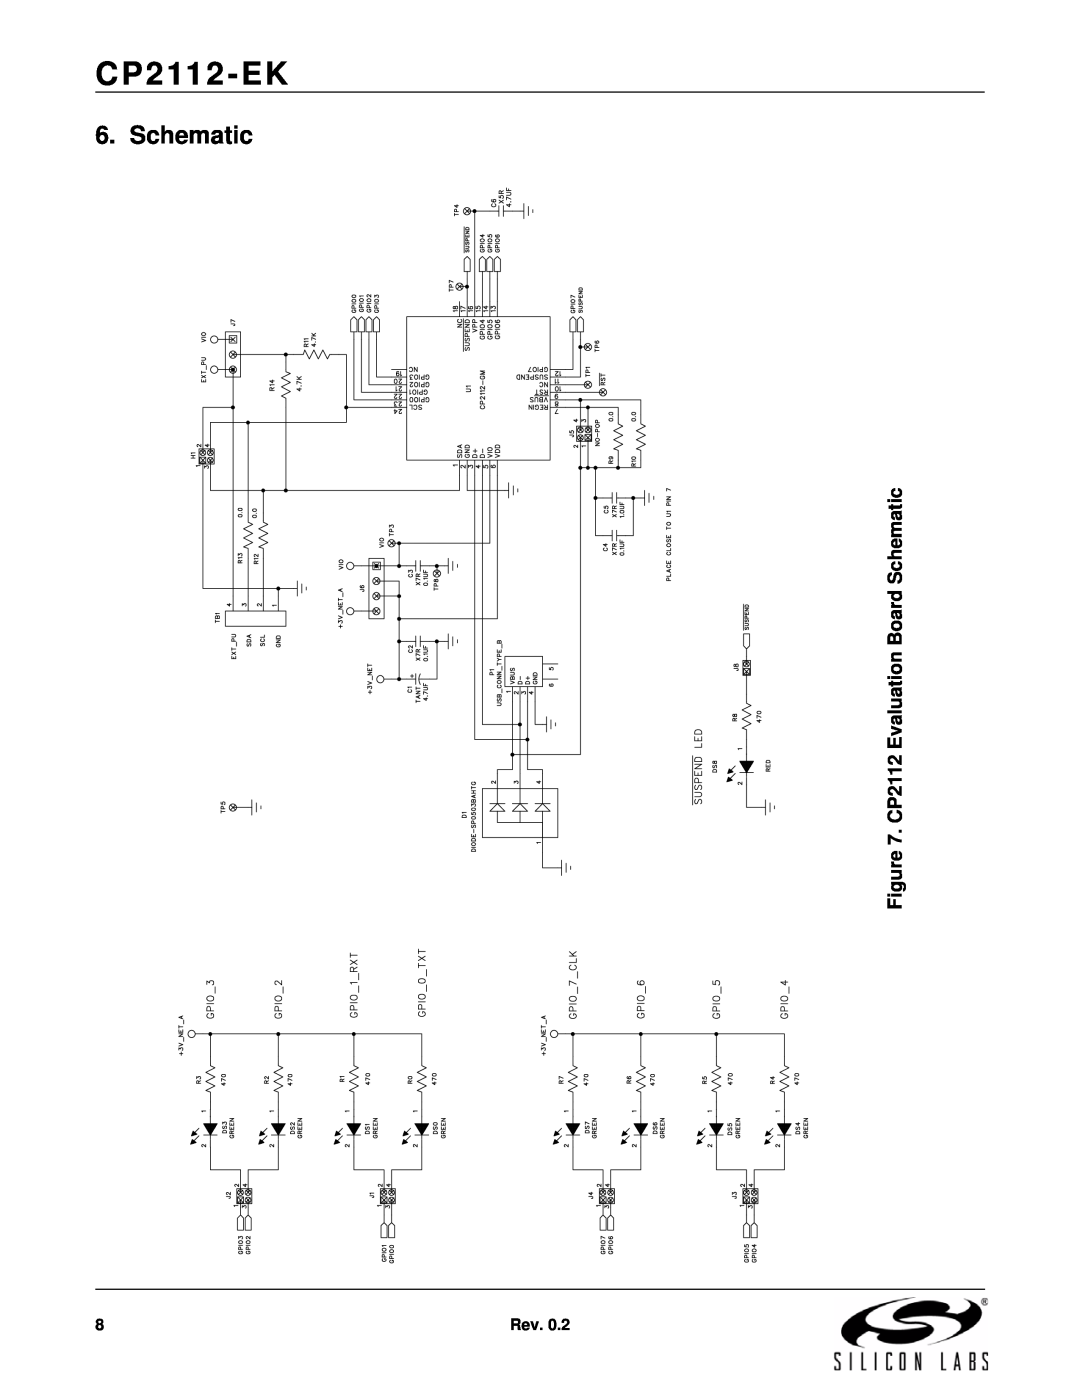 Silicon Laboratories CP2112-EK manual CP2112 Evaluation Board Schematic 